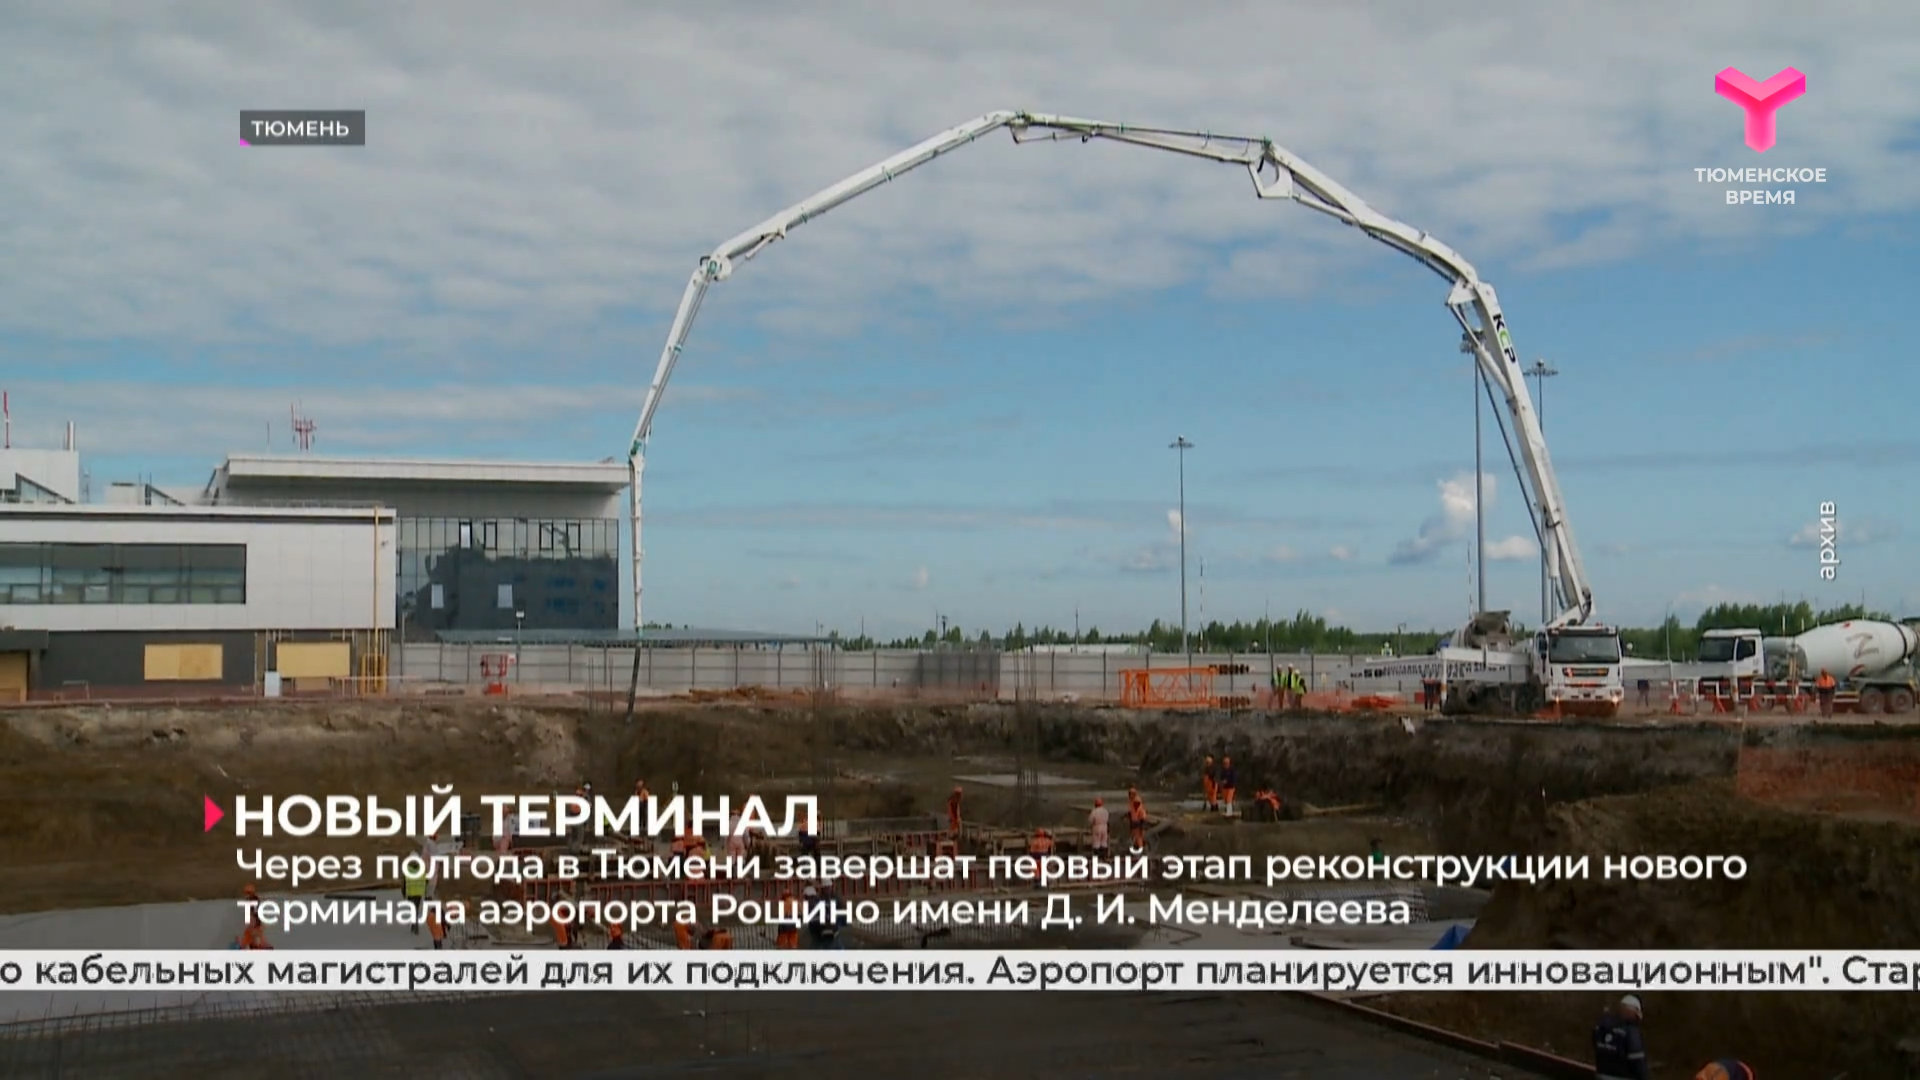 Через полгода в Тюмени завершат первый этап реконструкции нового терминала аэропорта Рощино